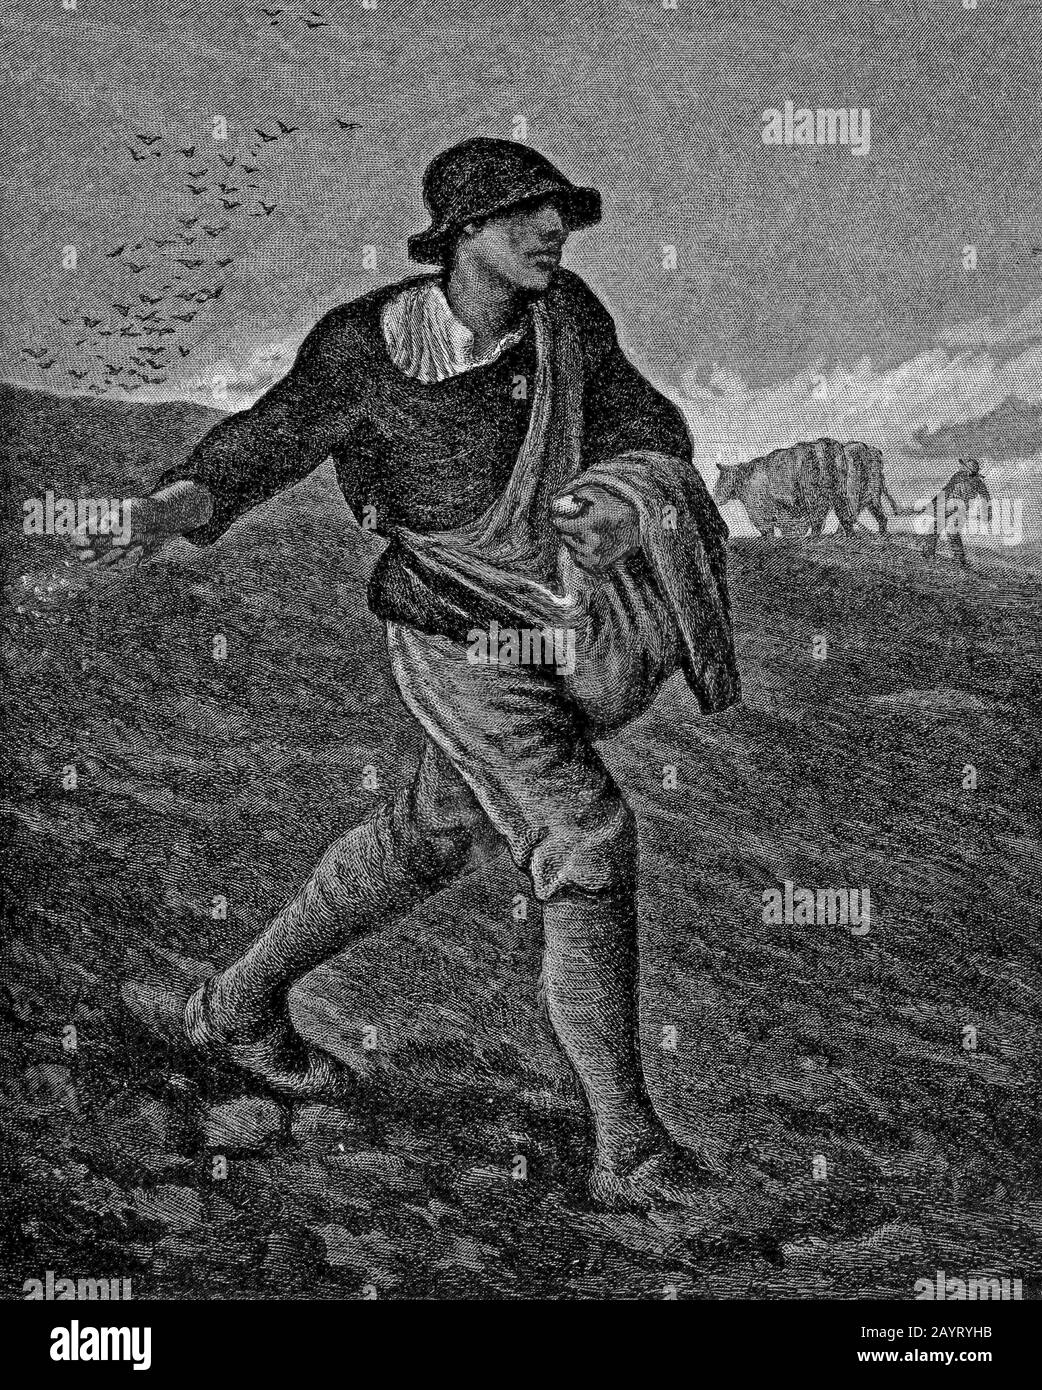 Illustration des Gemäldes "Der Sämann" von Jean-François Millet (1814-1875), einem französischen Maler und einer der Gründer der Barbizon-Schule. Millet ist für seine Szenen von Bauernbauern bekannt und wird als Teil der Kunstbewegung Des Realismus kategorisiert. Stockfoto